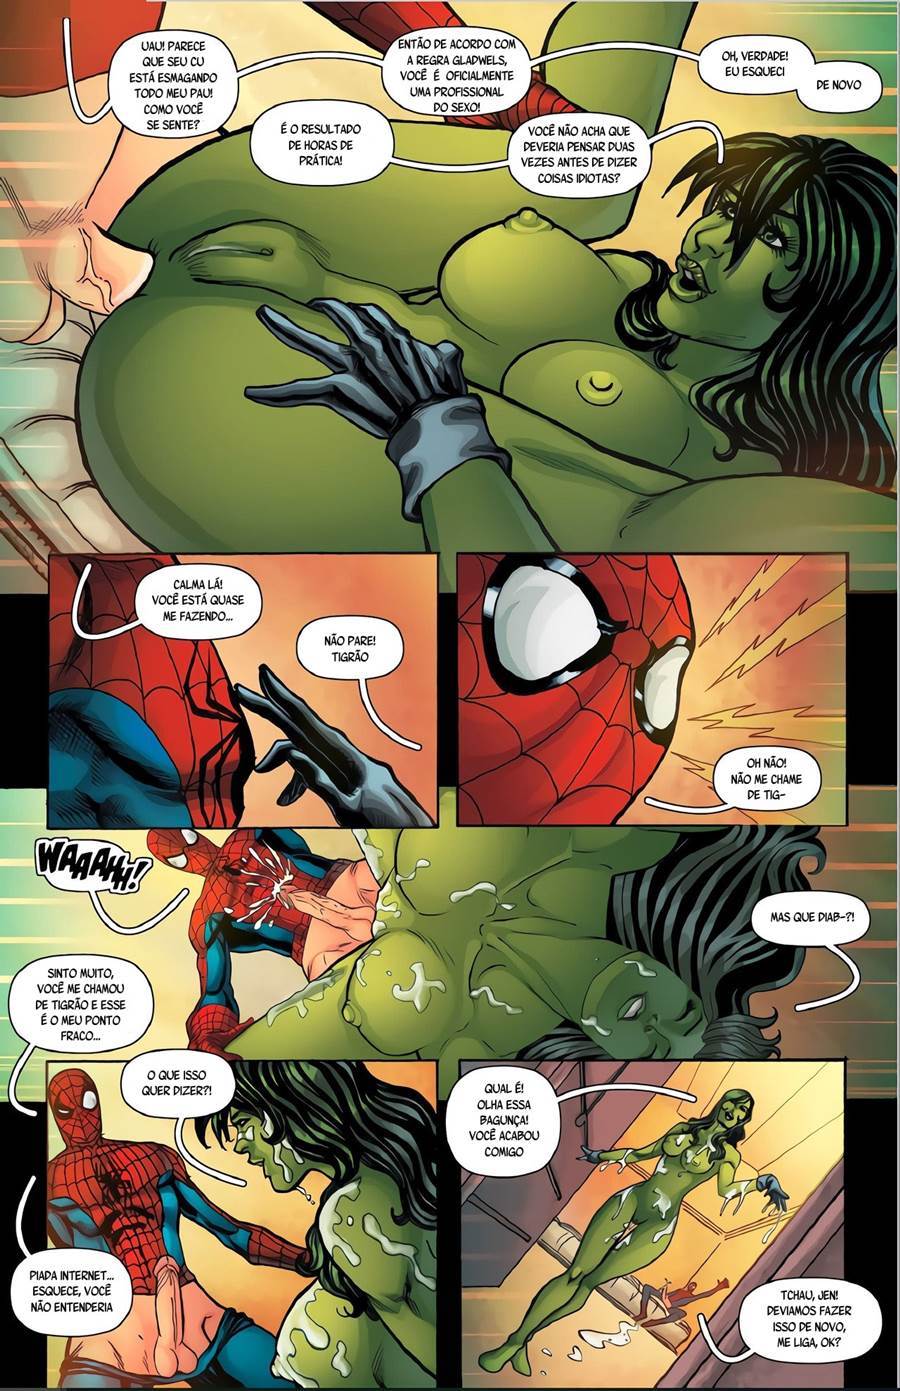 O gama sexual da Mulher Hulk - Foto 8